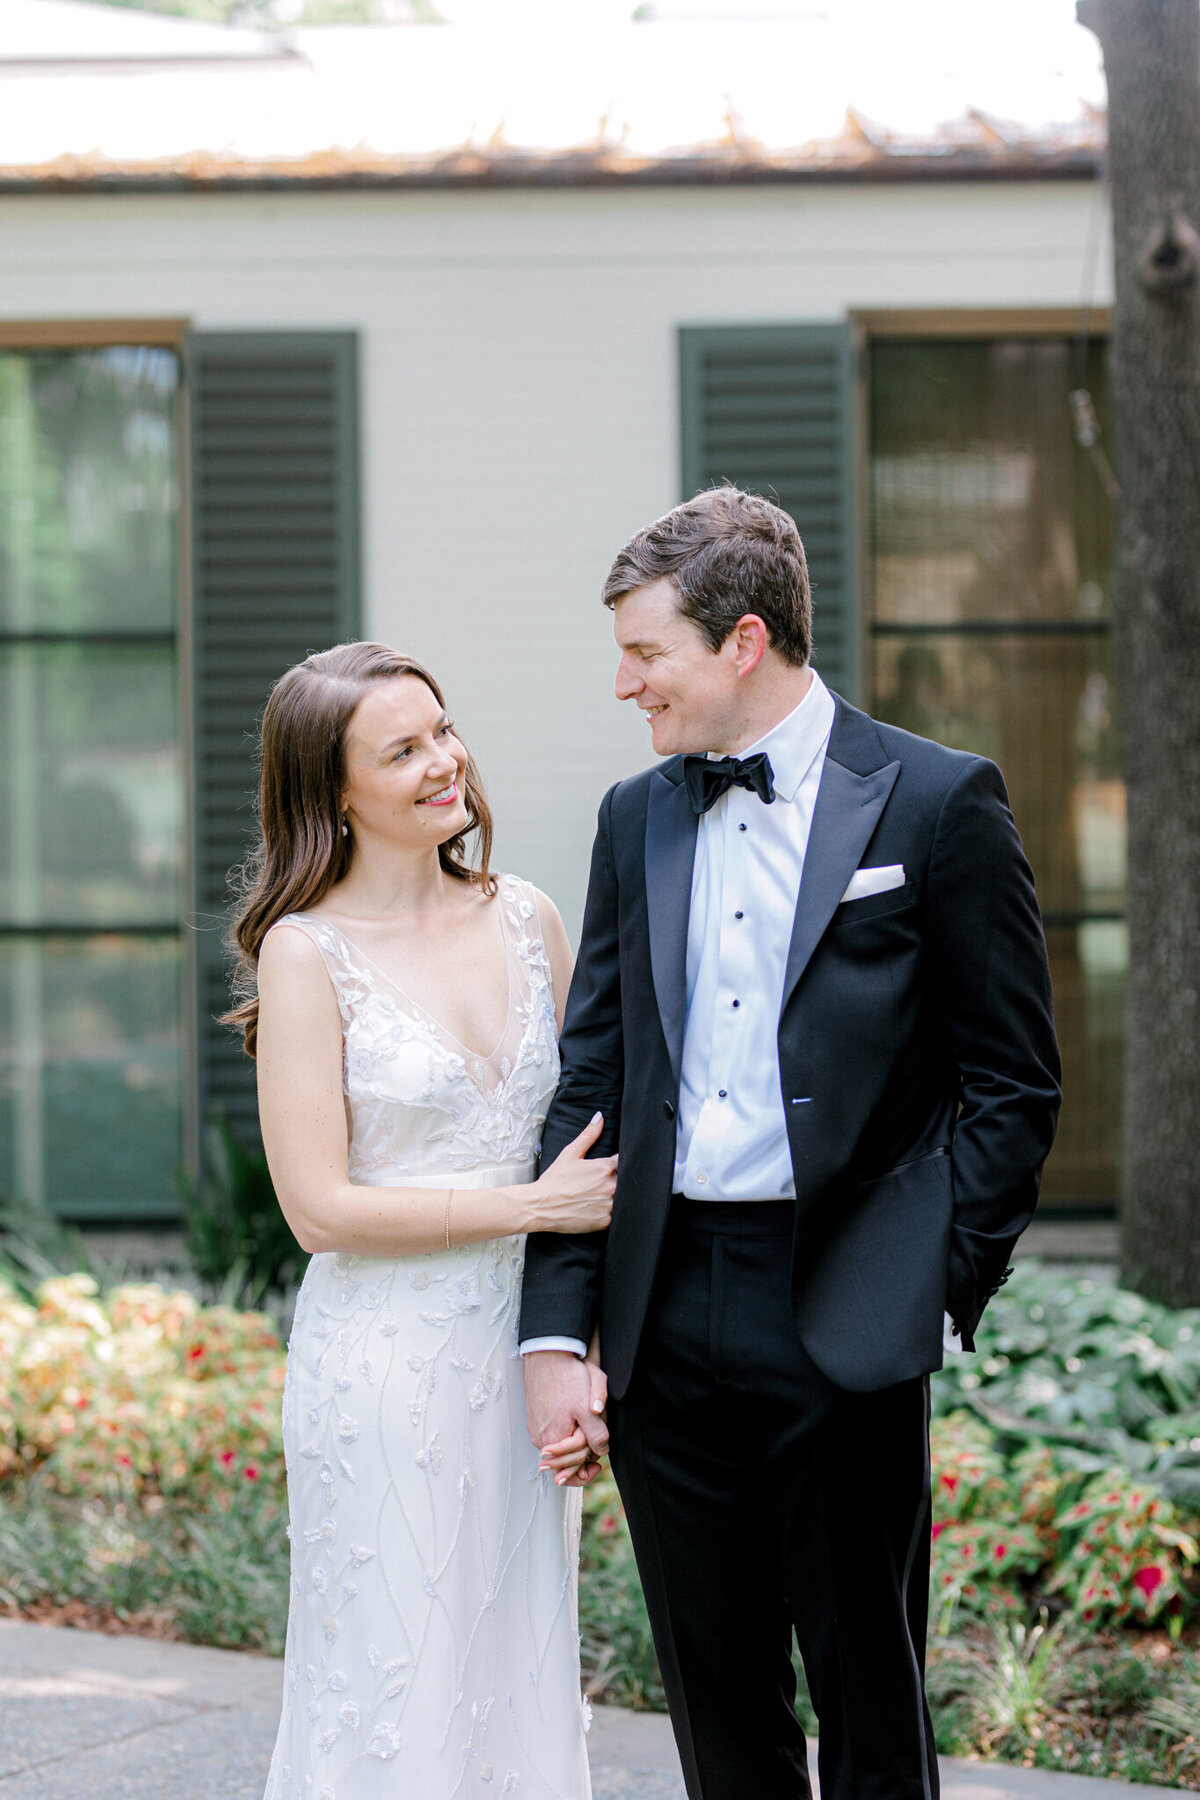 Gena & Matt's Wedding at the Dallas Arboretum | Dallas Wedding Photographer | Sami Kathryn Photography-89